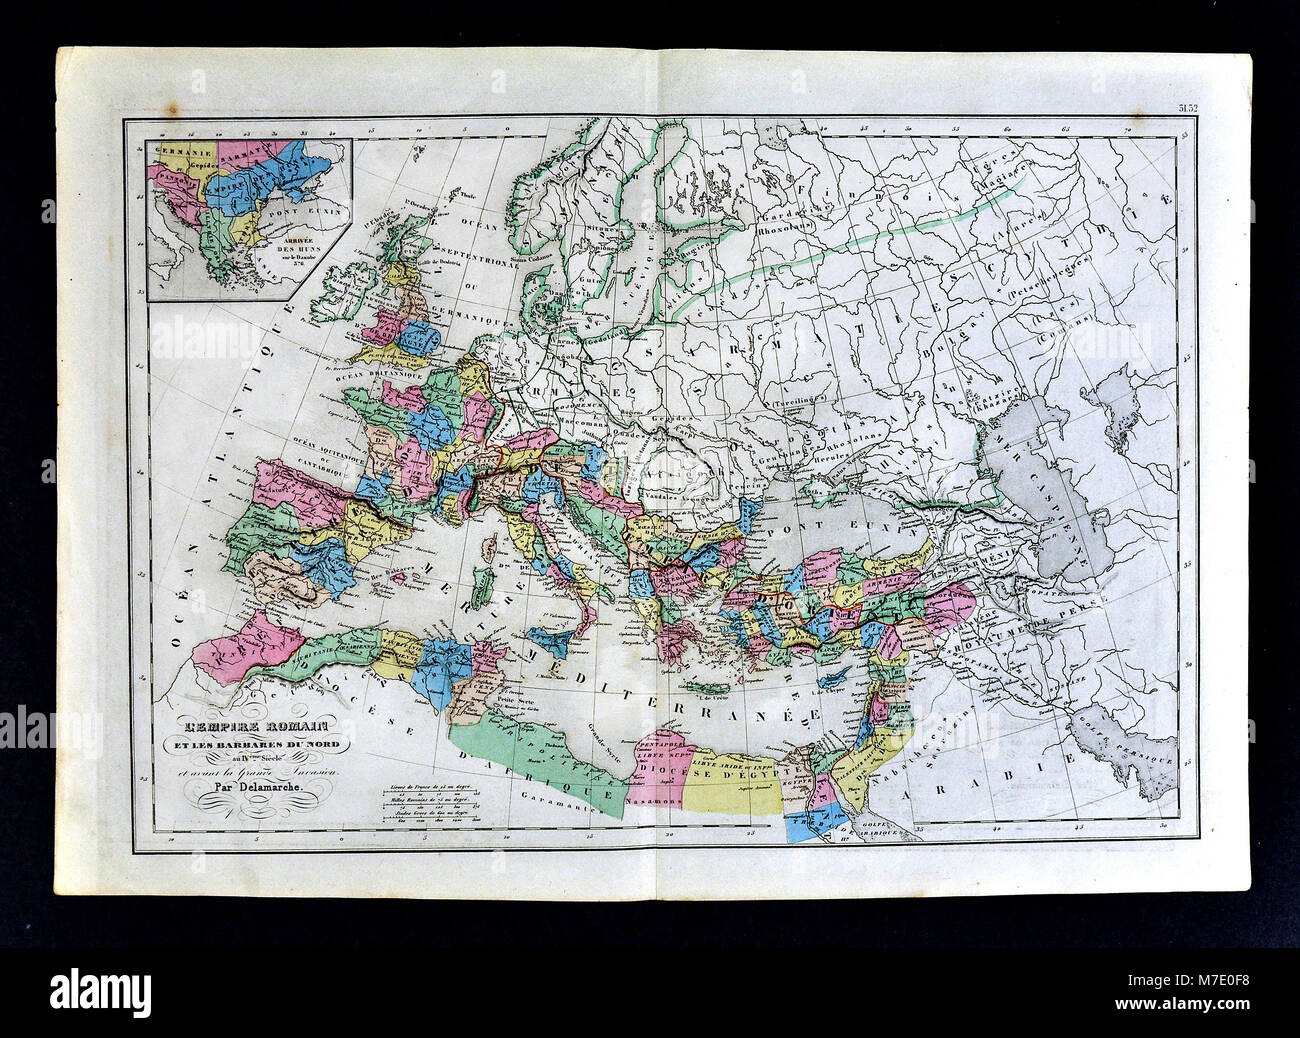 1858 Delamarche Historische Karte von Europa, das Römische Reich im 4. Jahrhundert vor der Invasion der Barbaren Stockfoto